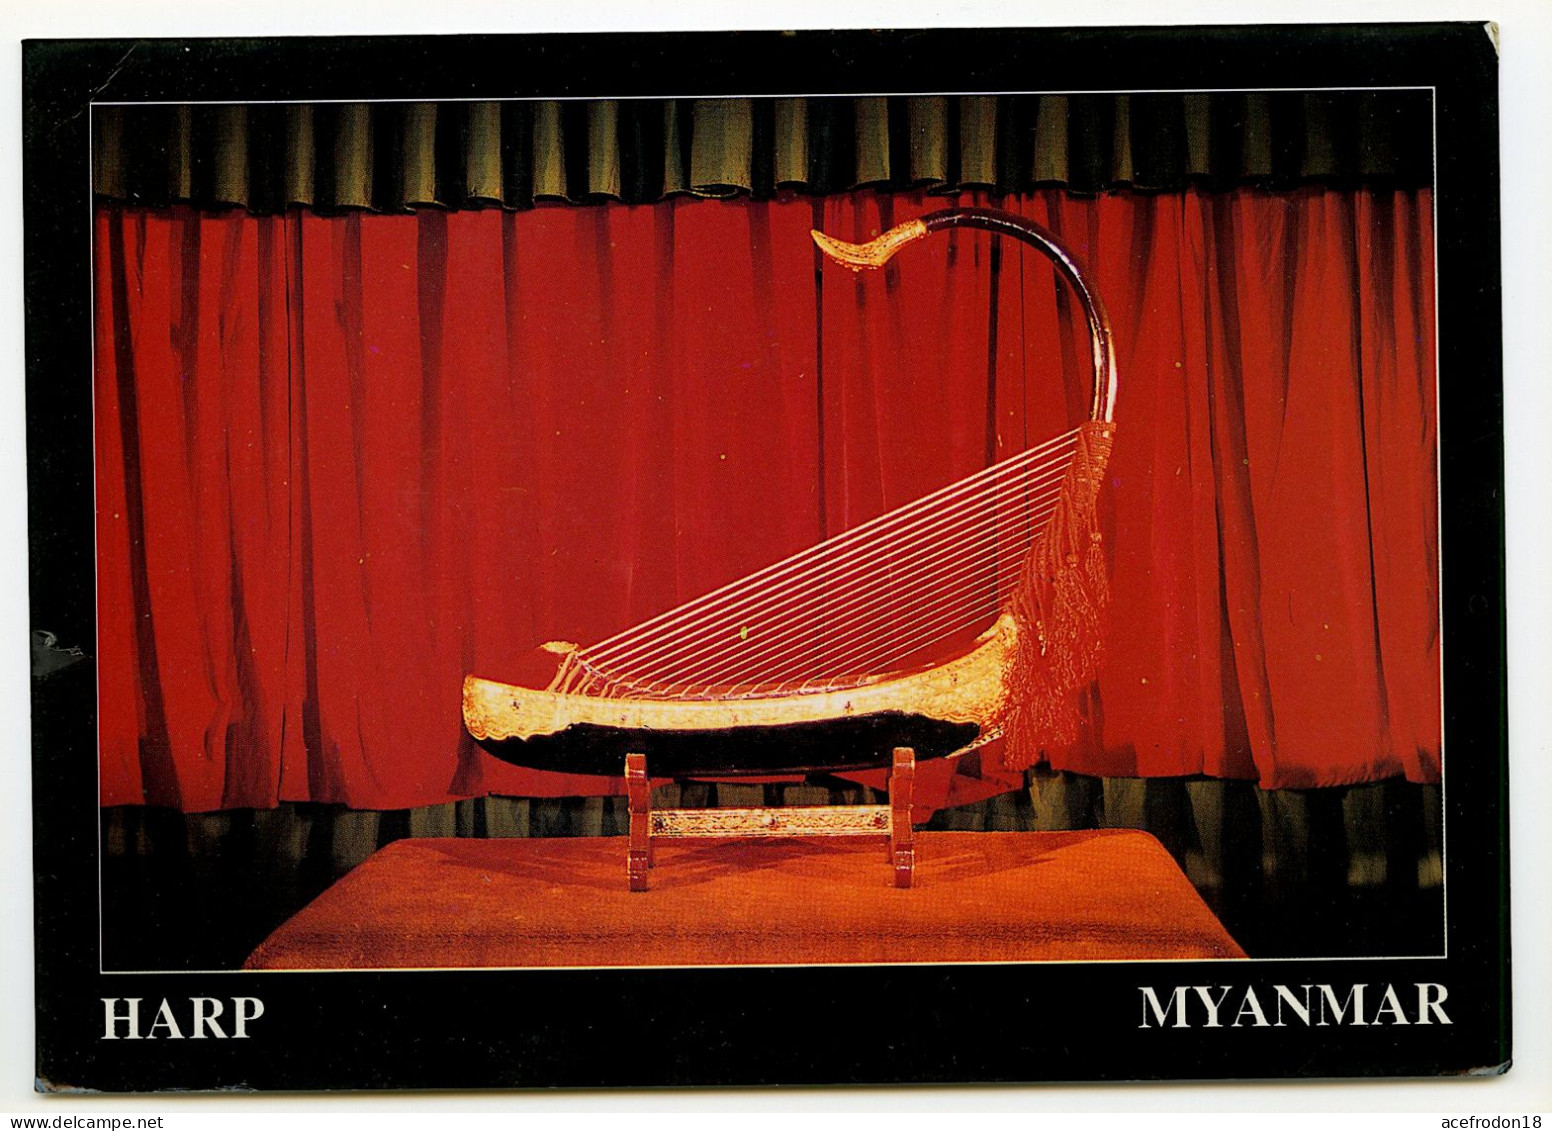 MYANMAR - HARP - Myanmar (Burma)